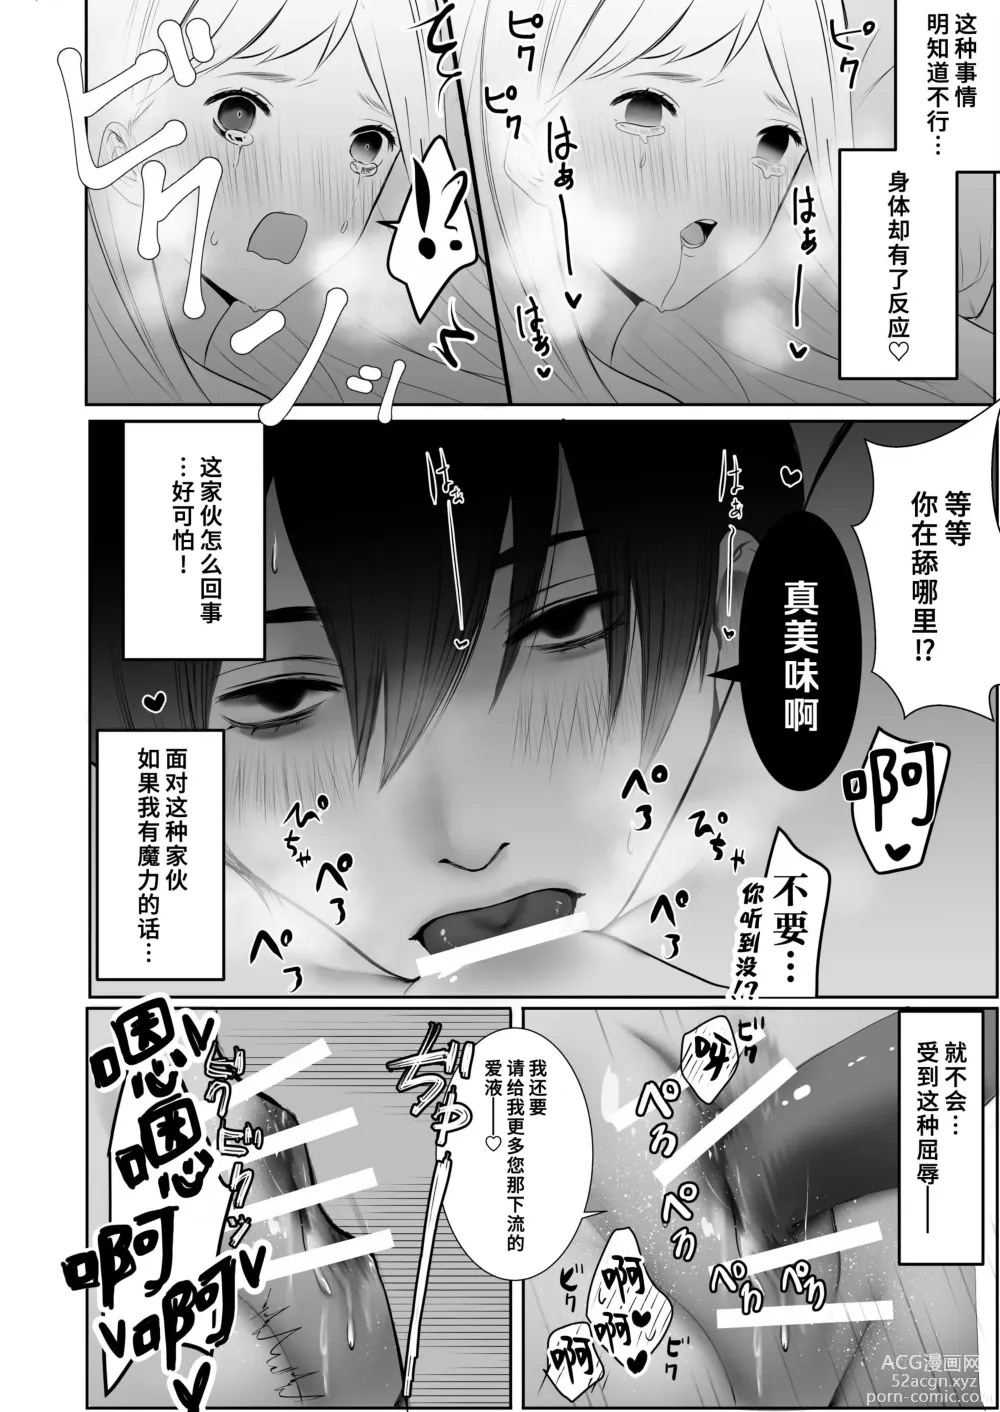 Page 15 of doujinshi 原天才魔法士被敌对死灵法师死缠烂打不放手